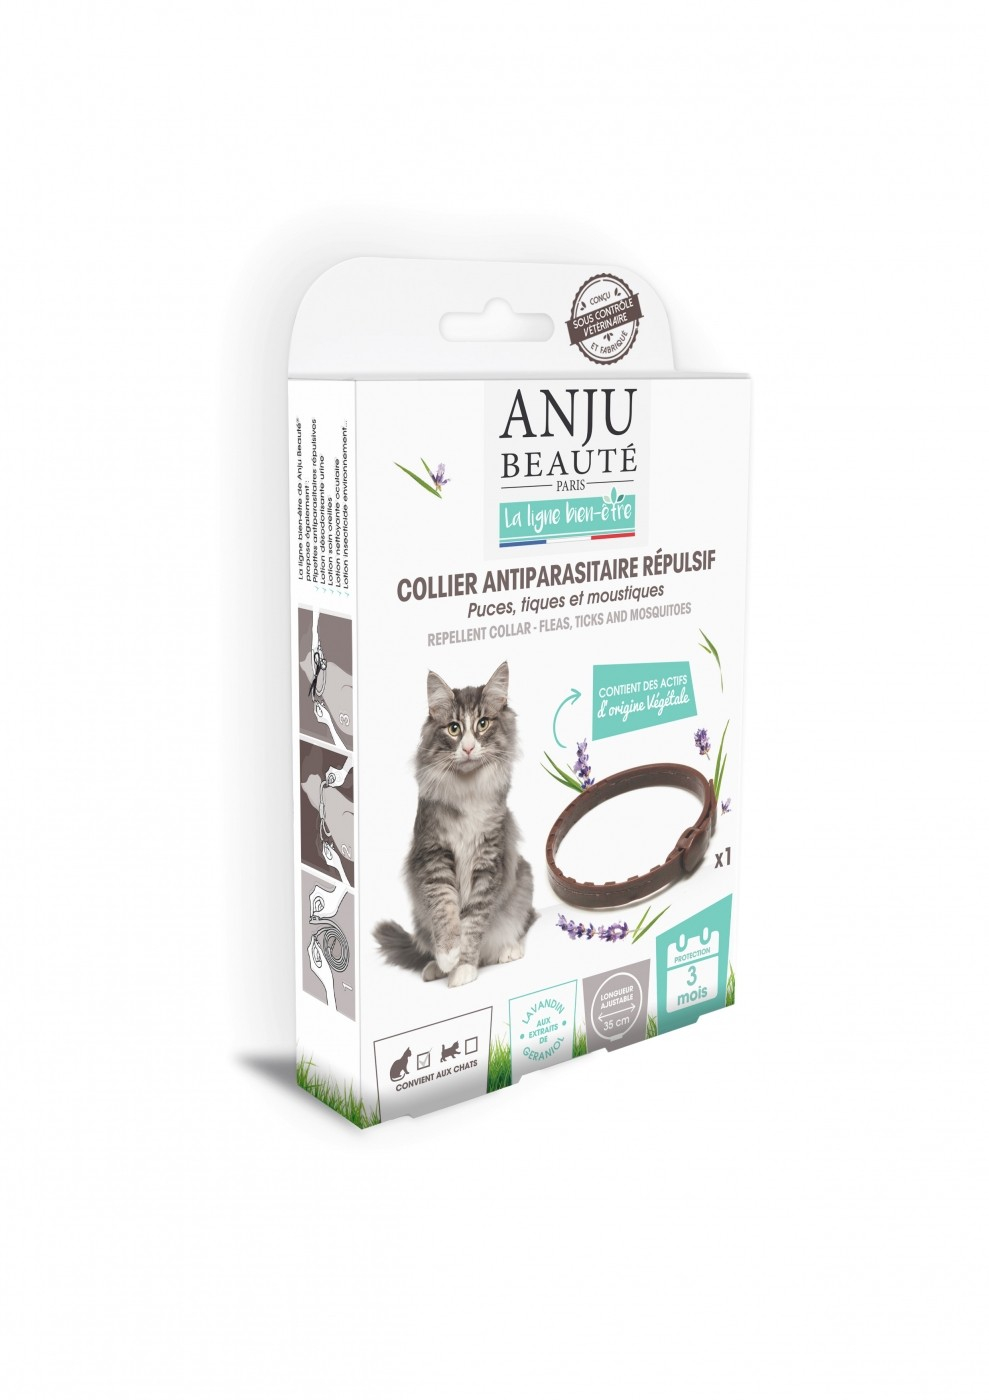 ANJU - Pestizidhalsband abstoßend für Katzen